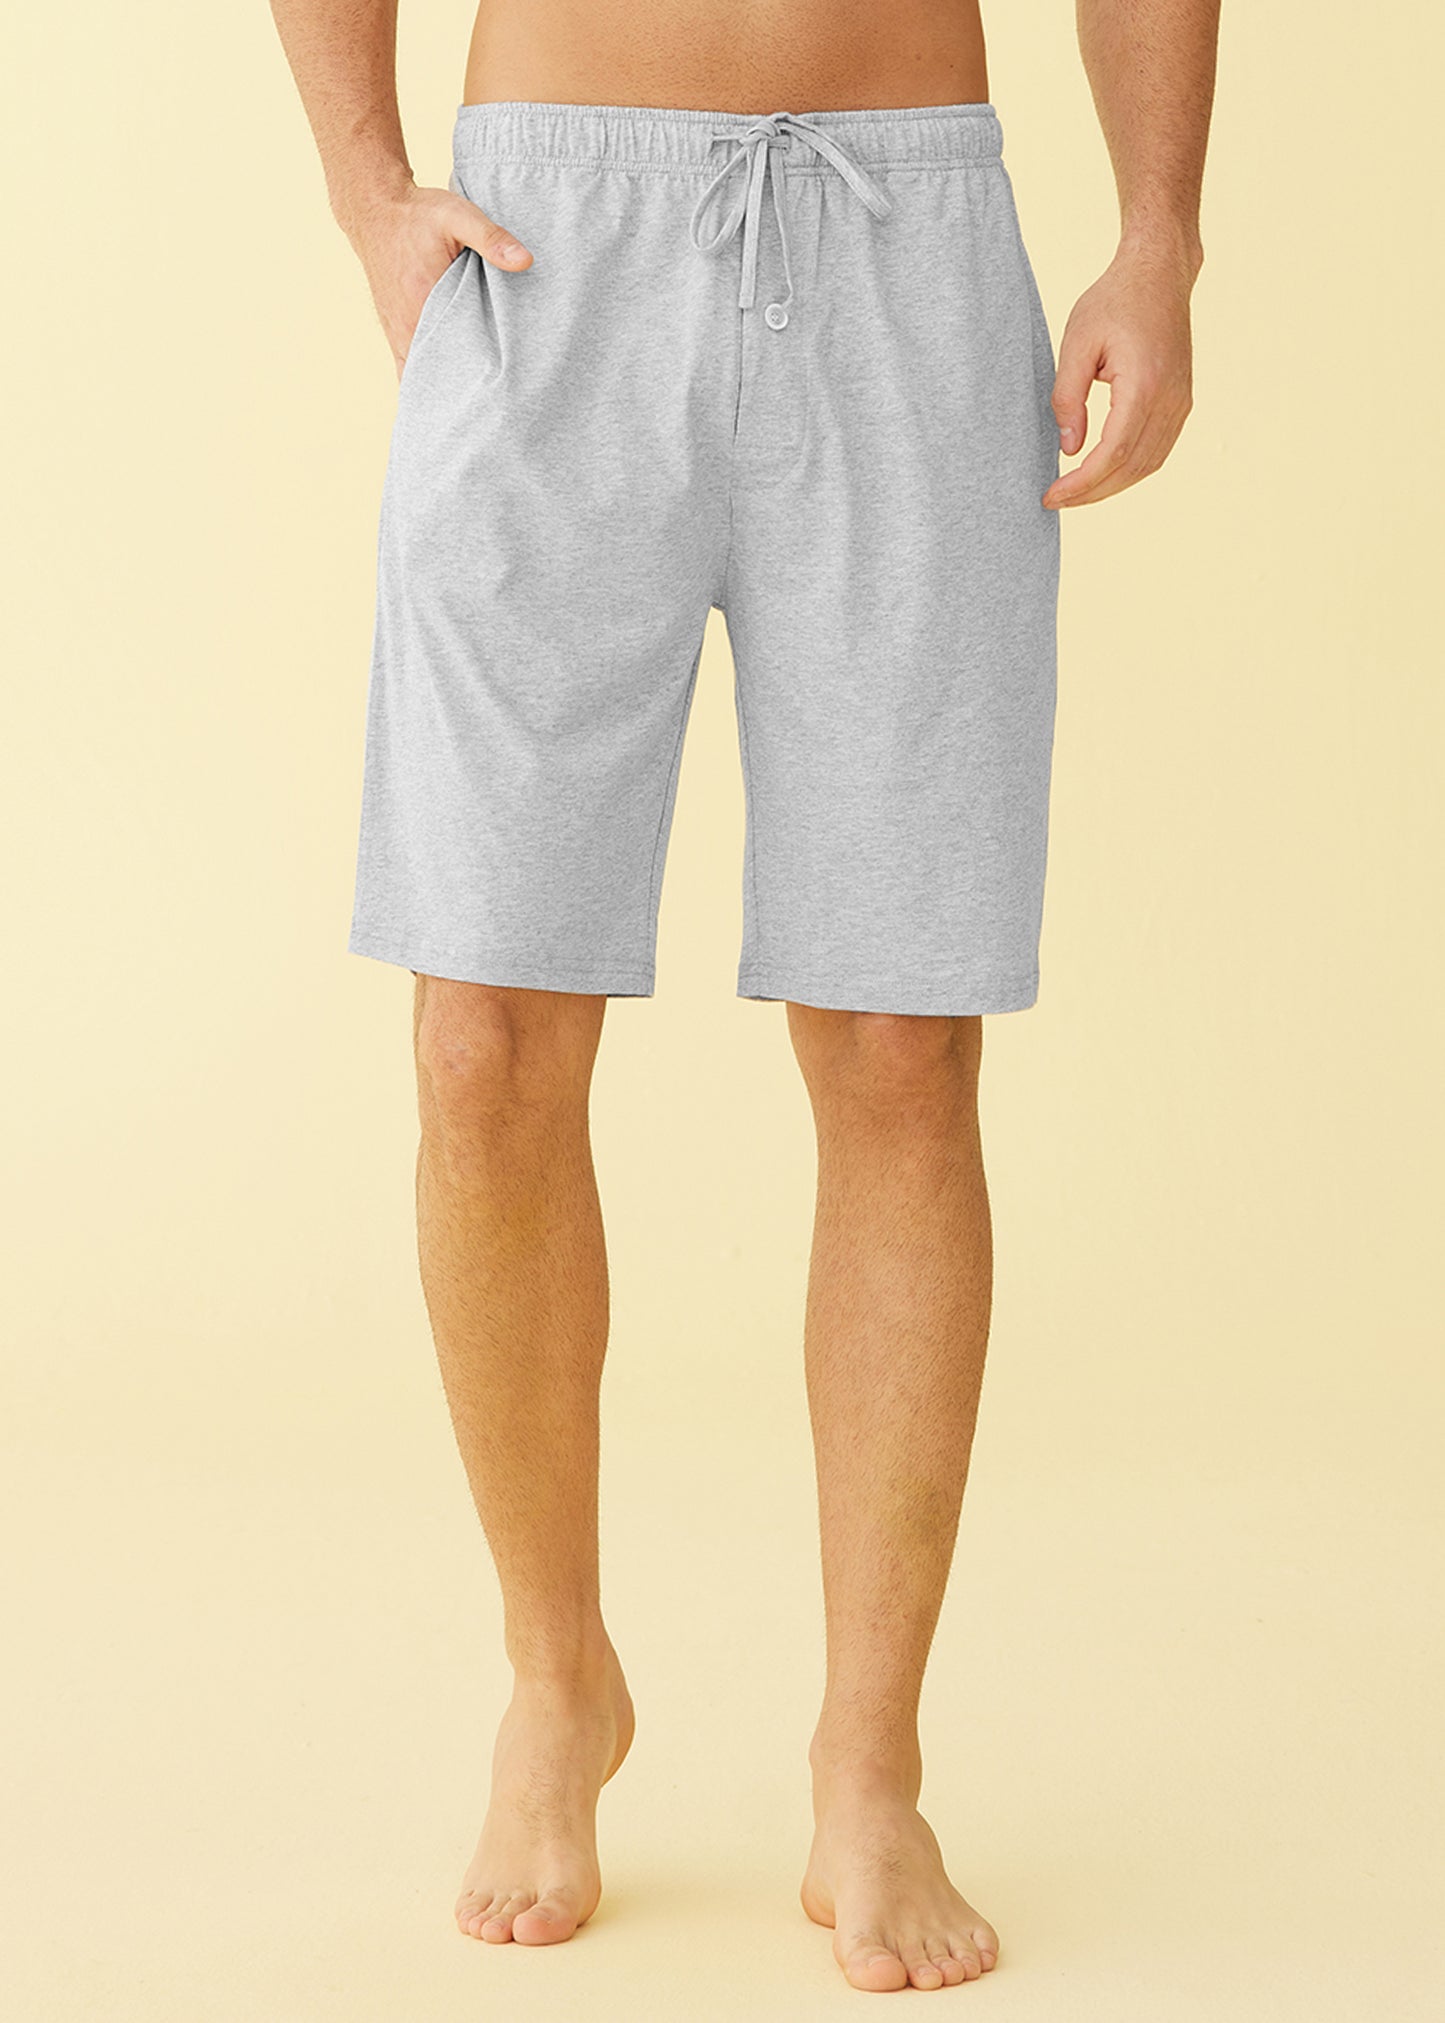 Mens Soft Sleep Shorts Loose Lounge Shorts Sleep Pant with Pockets Short  L-4XL